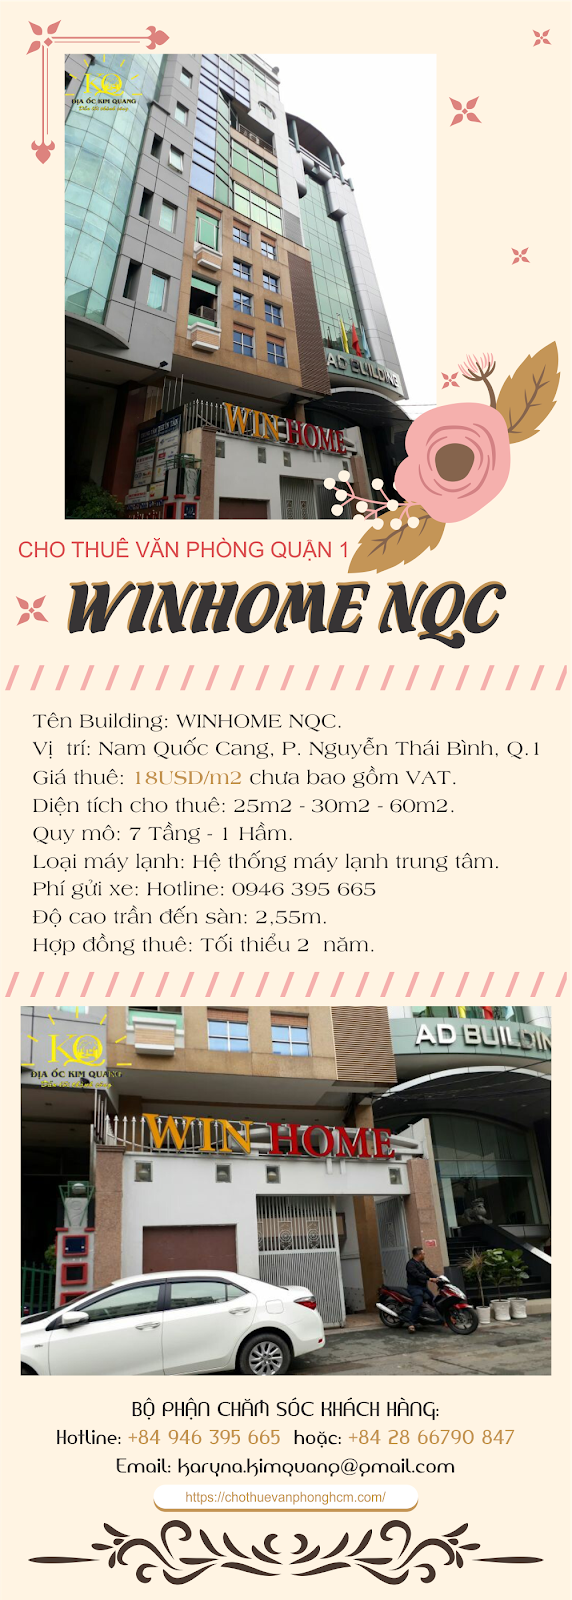 Văn phòng cho thuê quận 1 Winhome NQC